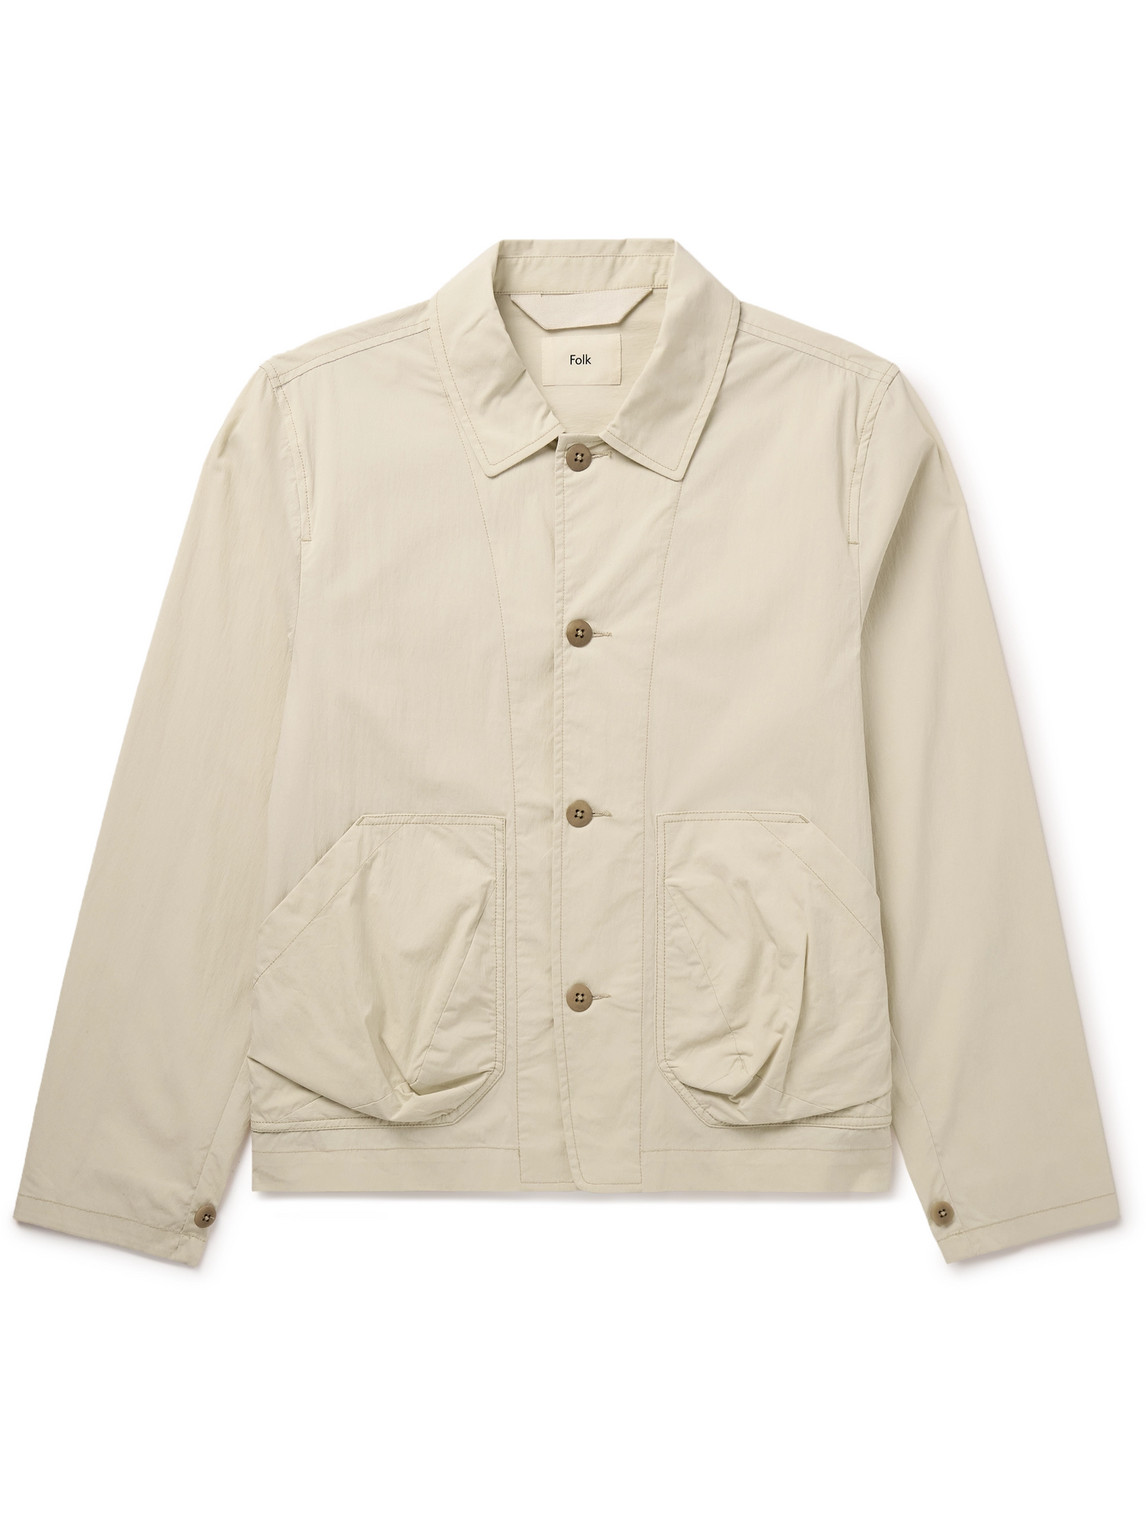 Folk Prism Crinkled Cotton-blend Poplin Jacket In Neutrals